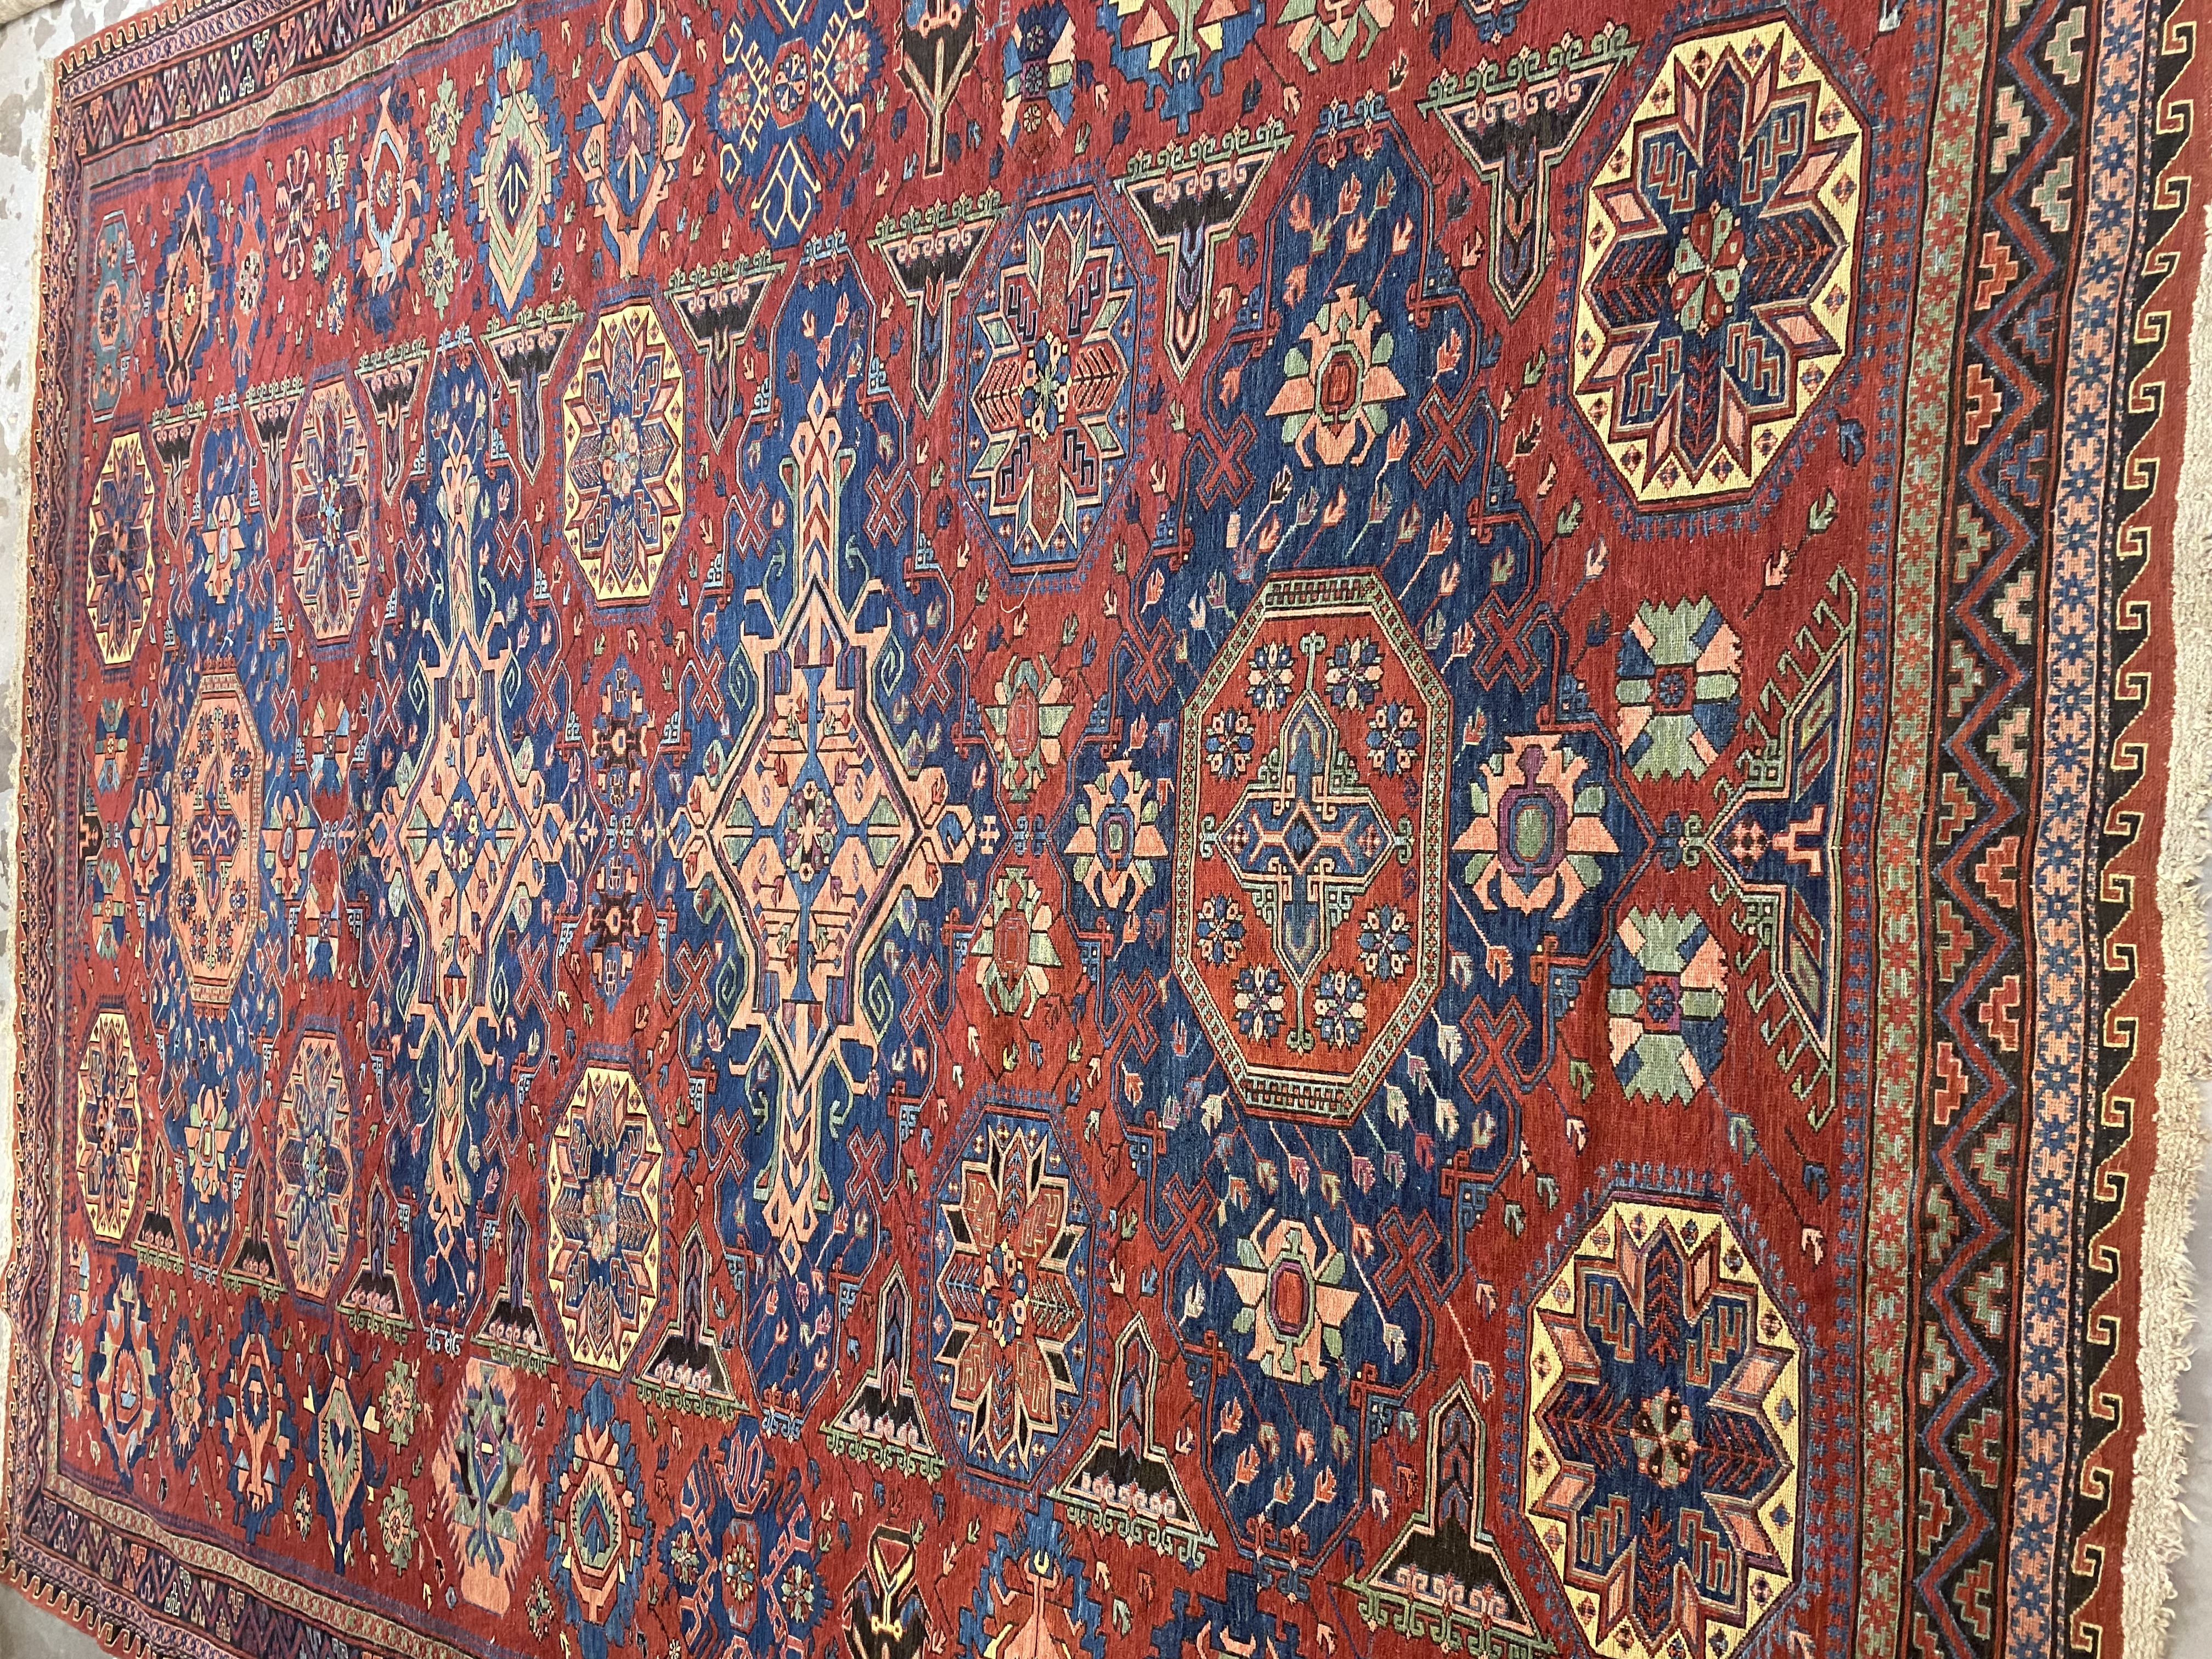 Antique soumac Carpet - # 56704